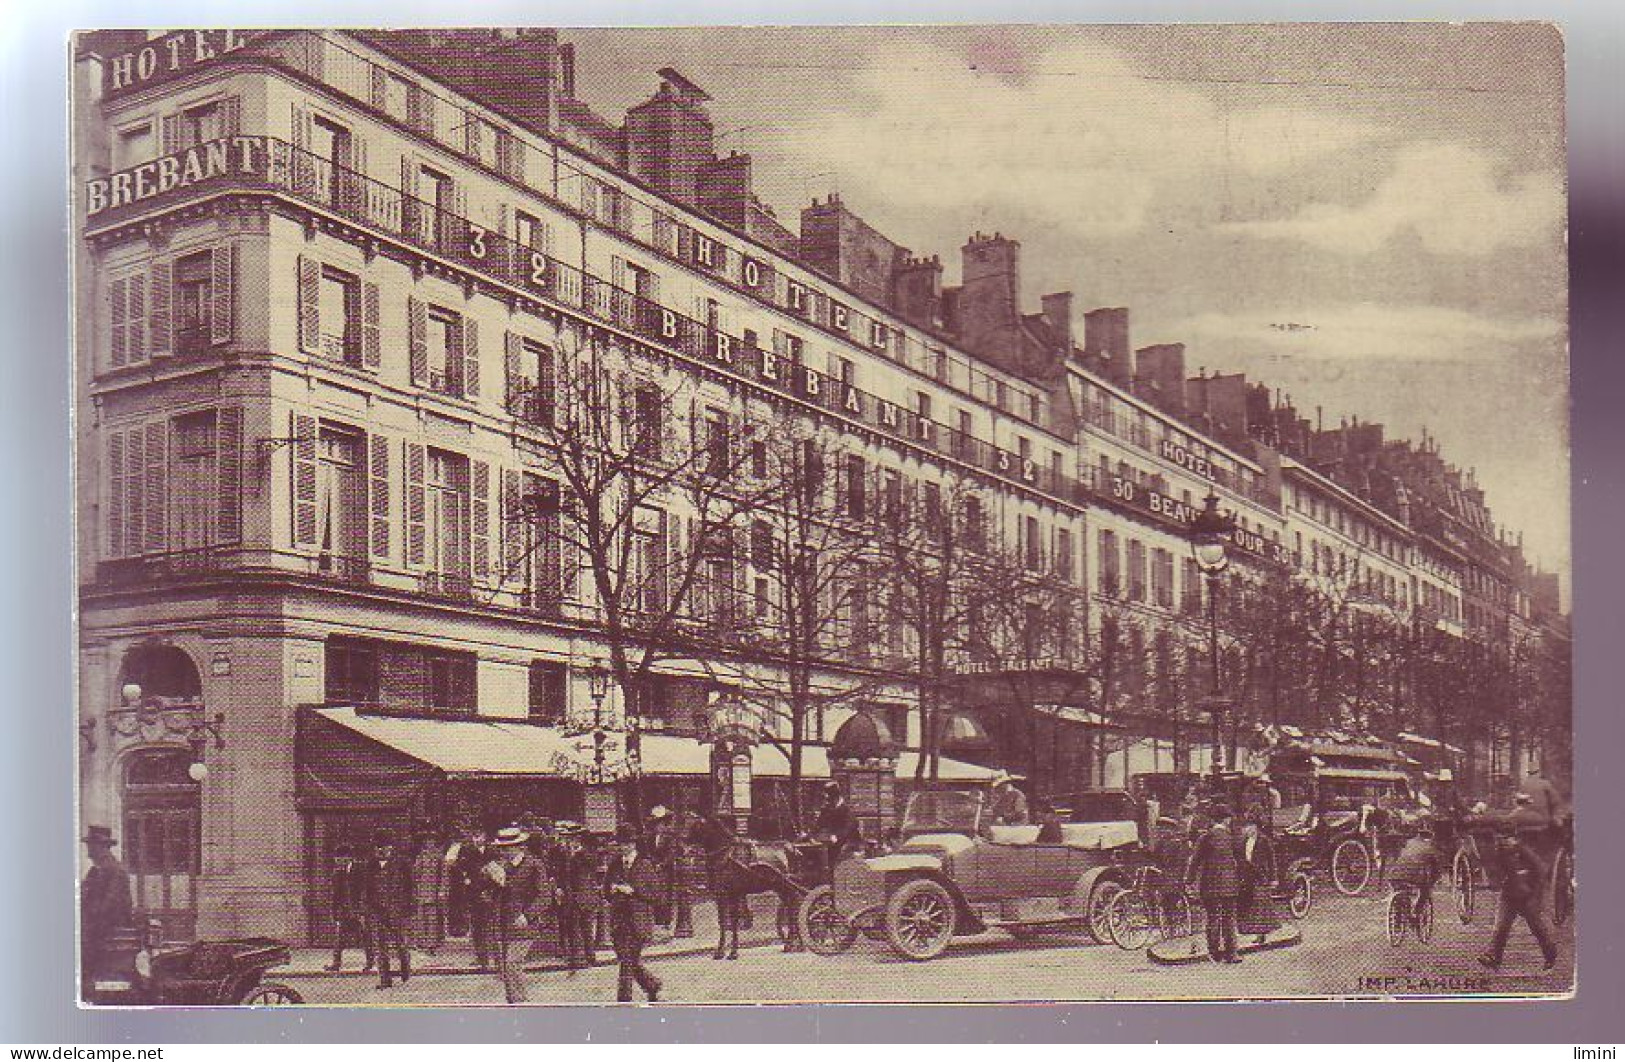 75 - PARIS - HÔTEL BREBANT Et HÔTEL BEAUSEJOUR - ANIMÉE - AUTOMOBILE - - Pubs, Hotels, Restaurants